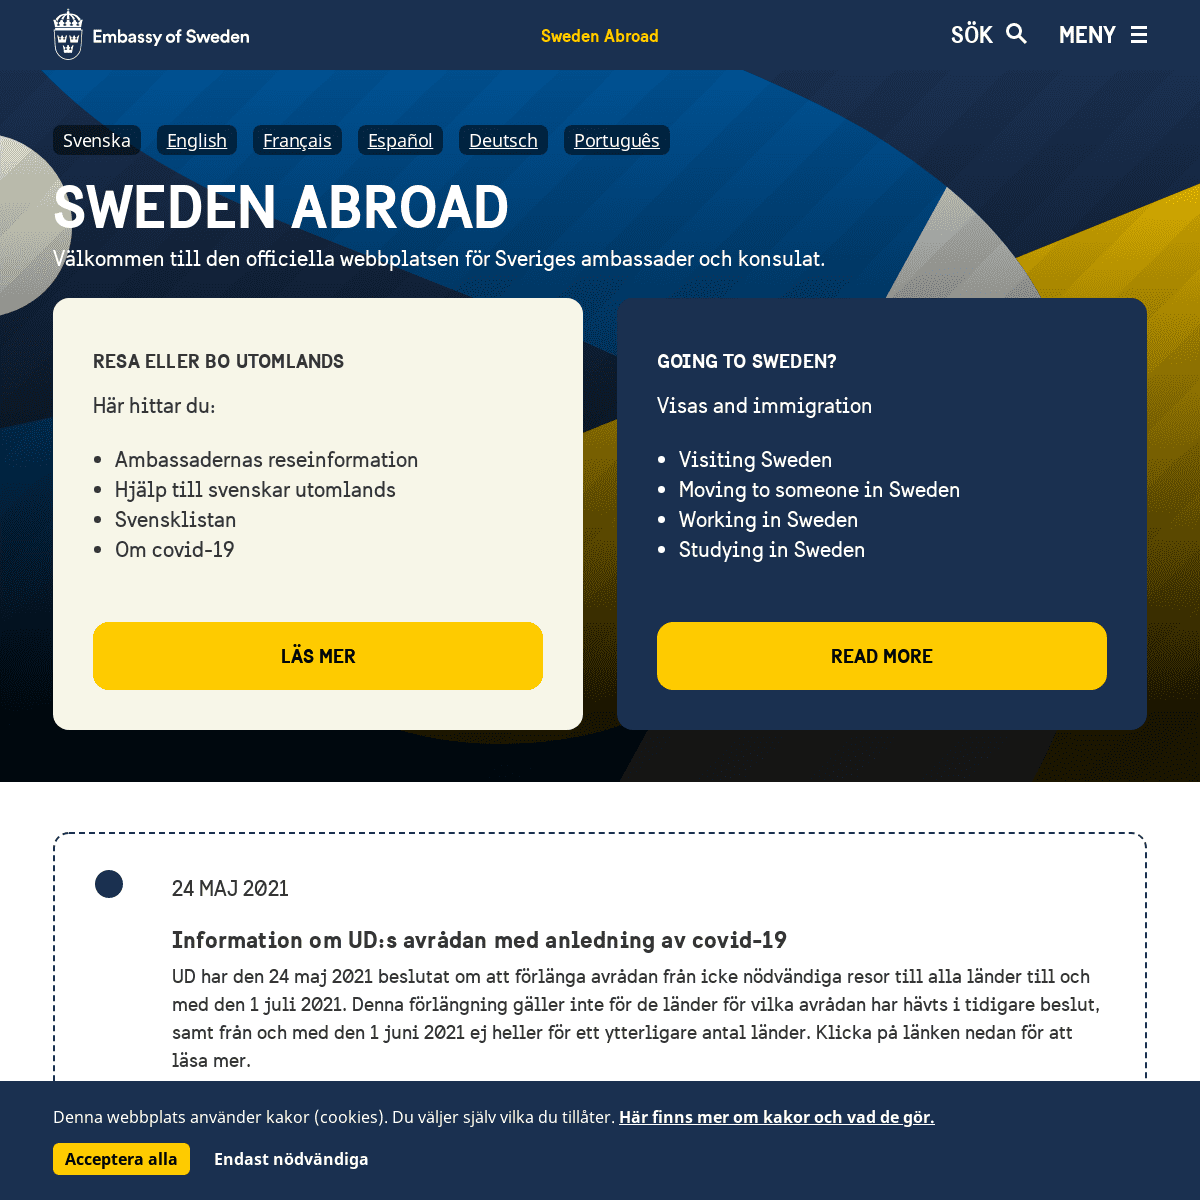 A complete backup of https://swedenabroad.com